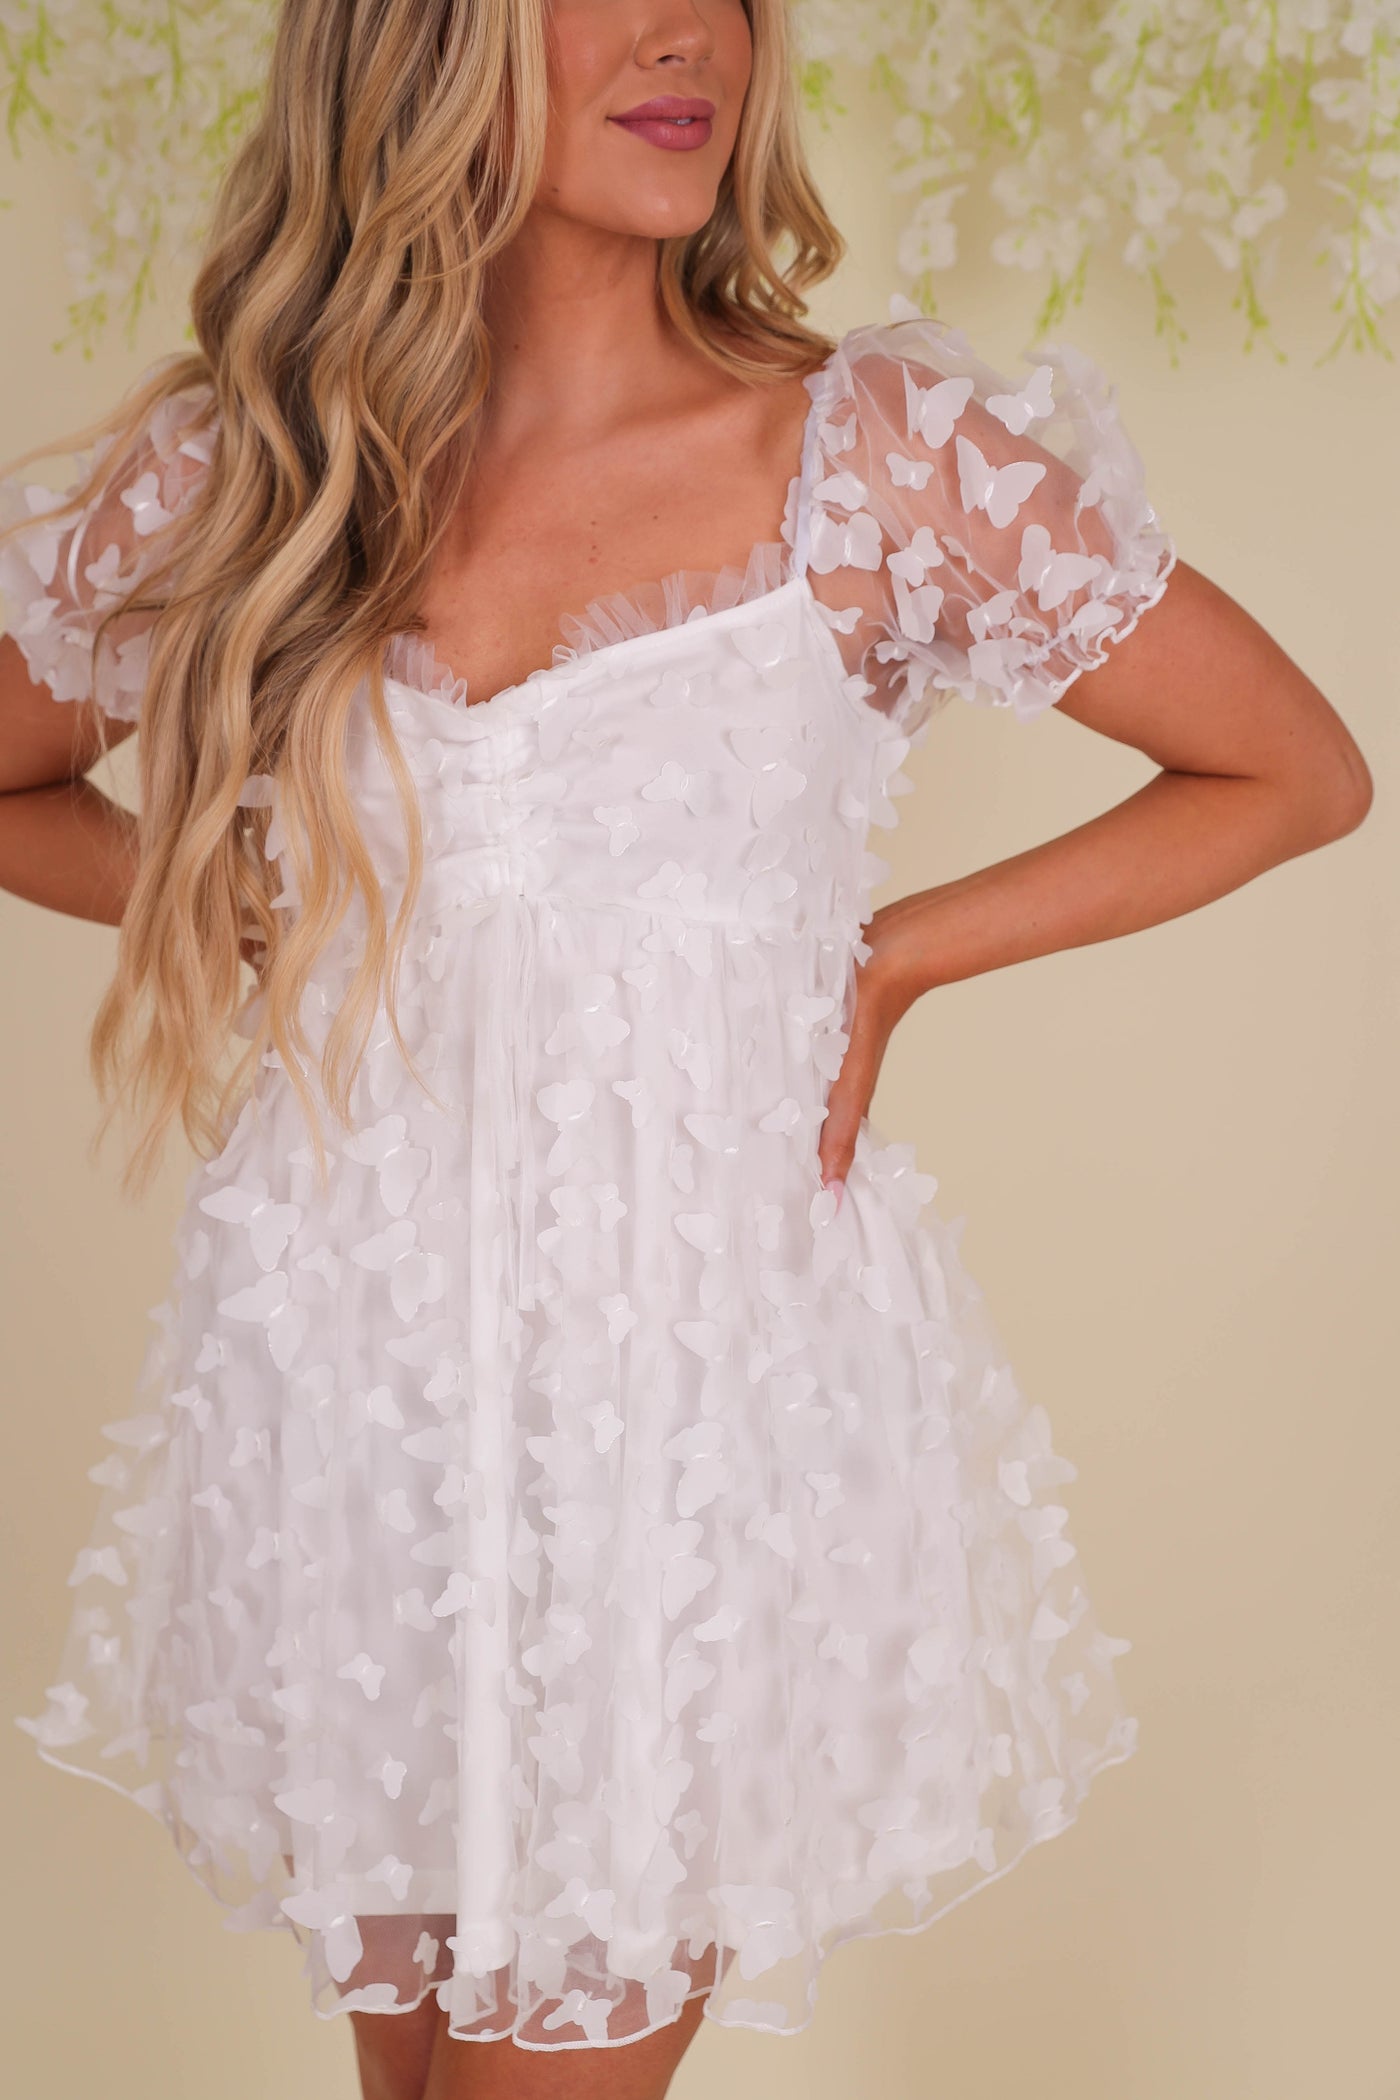 White Butterfly Dress- Women's Babydoll White Dress- 3D Butterfly Dress